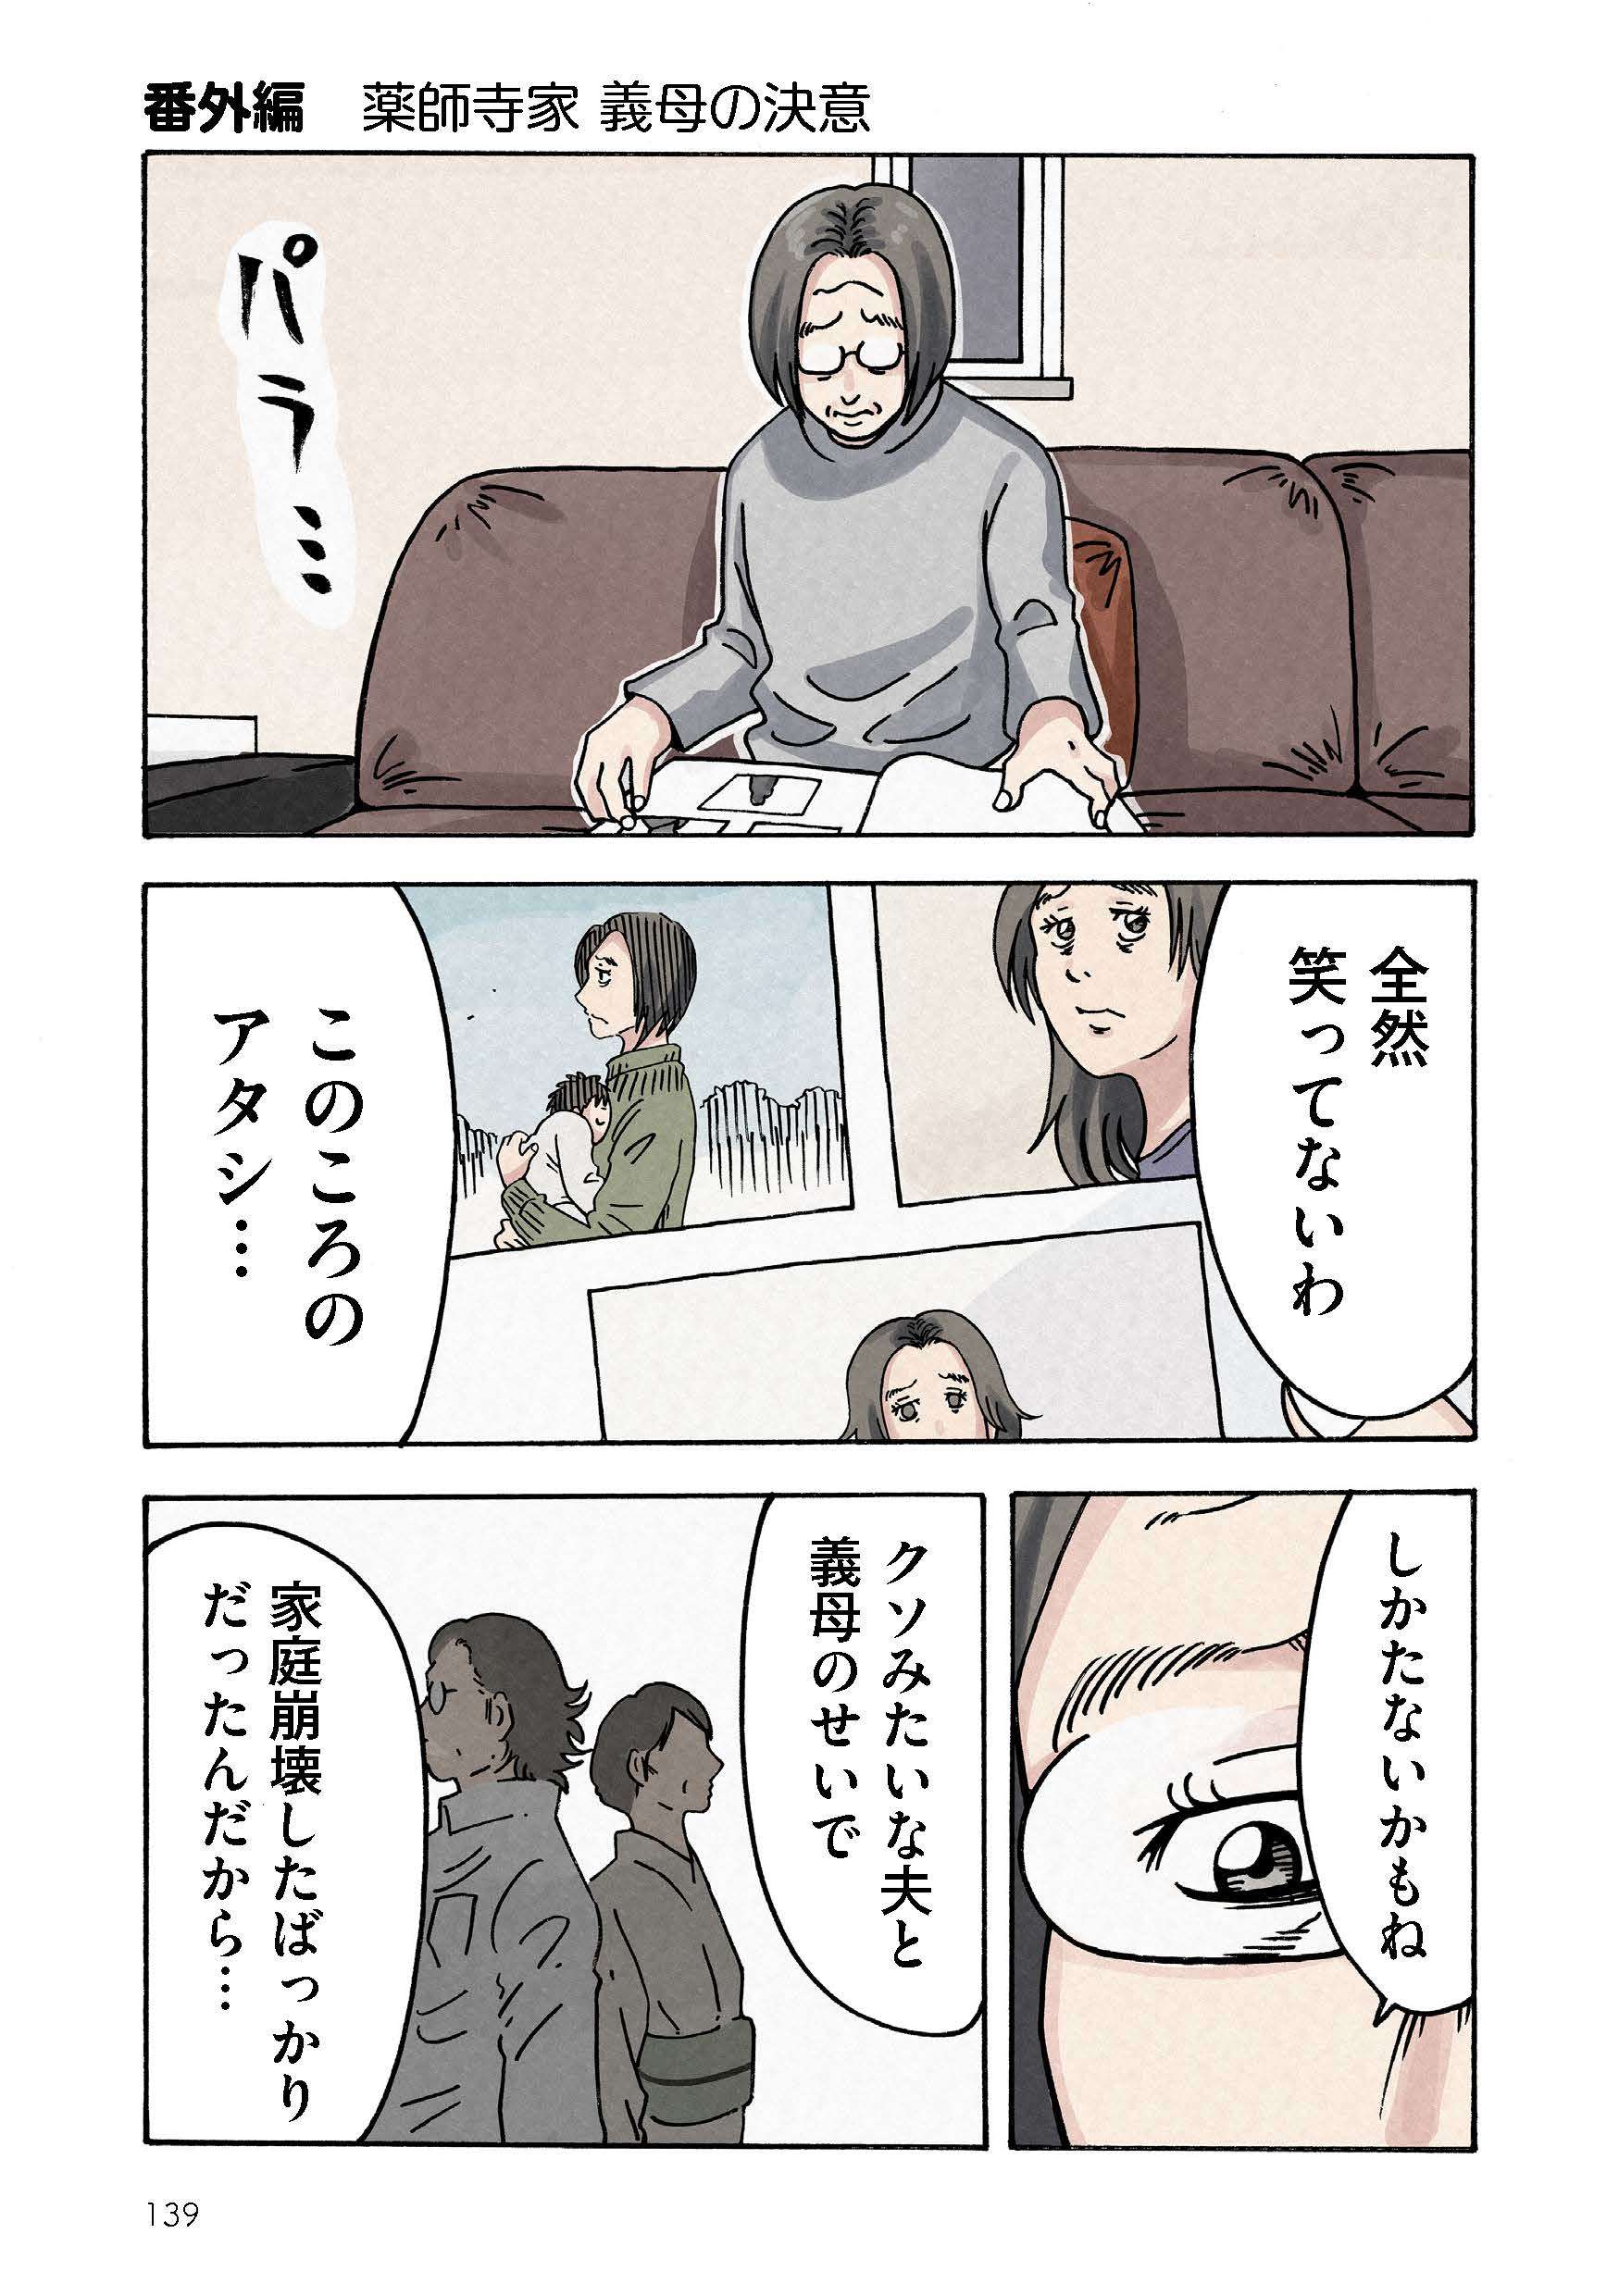 どちらかの家庭が崩壊する漫画_rgb_単ページ_ページ_139.jpg